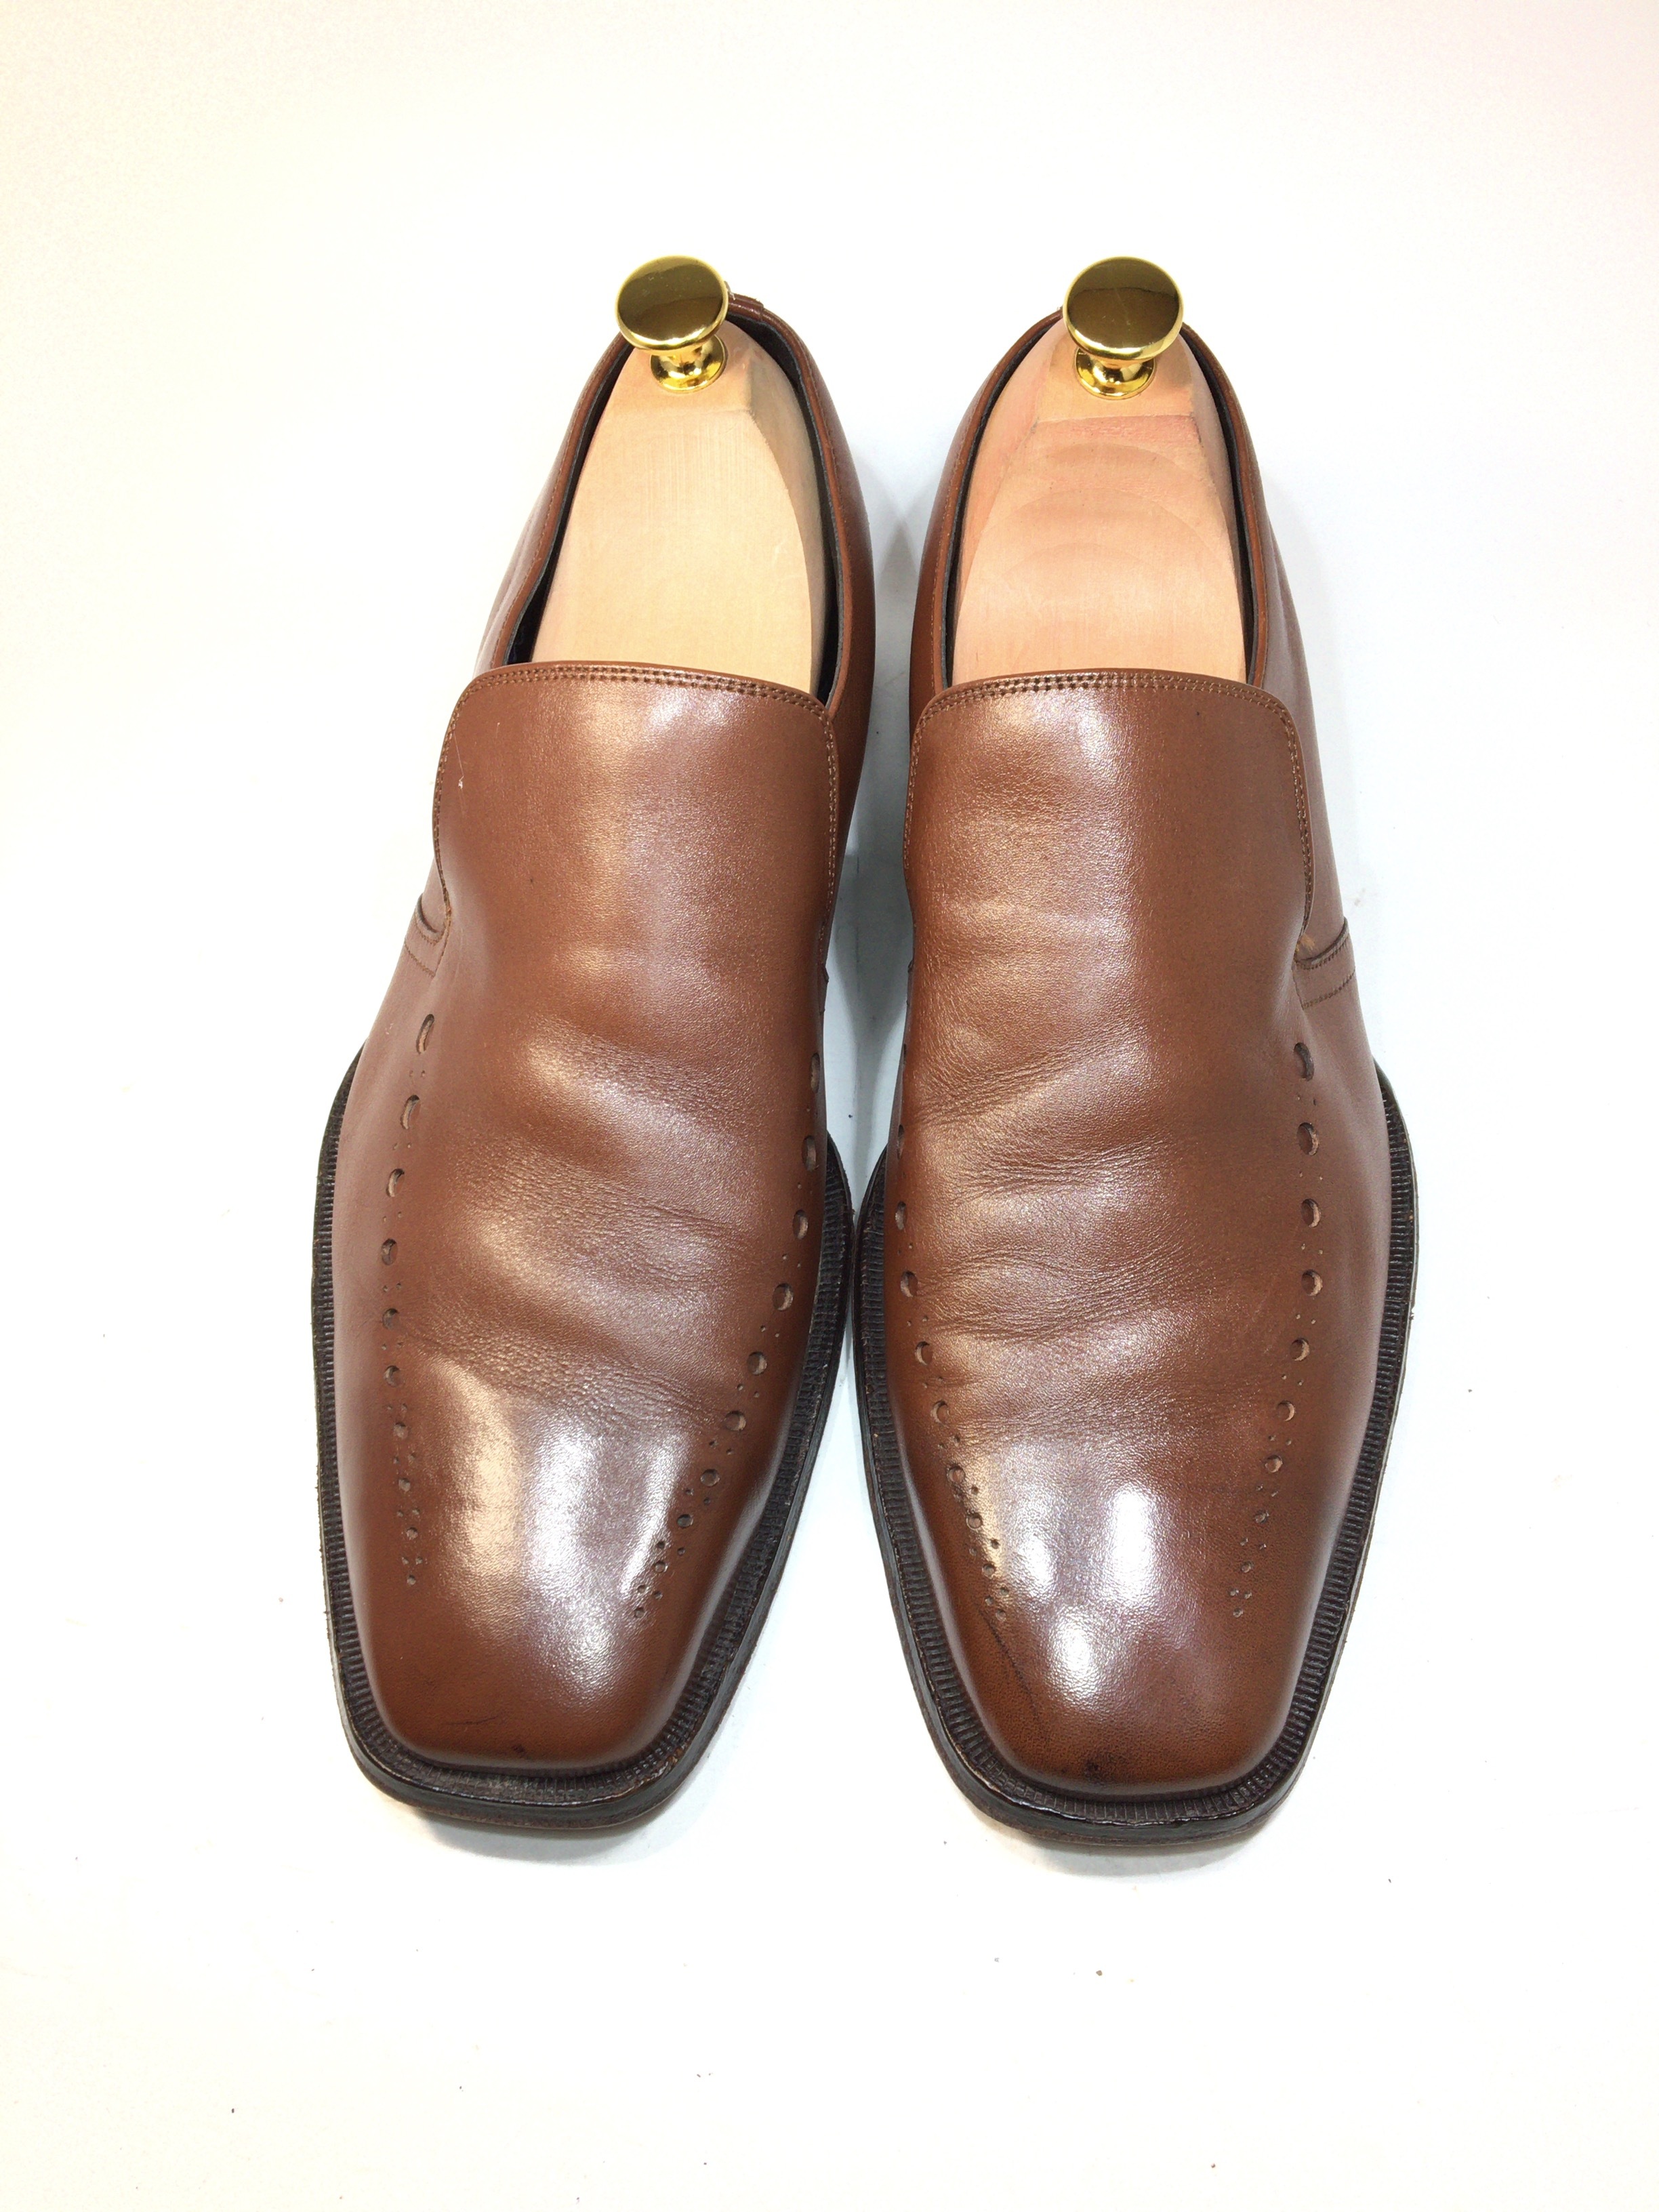 ポールスミス Paulsmith スリッポン 27センチ 中古靴 革靴 ブーツ通販専門店 Dafsmart ダフスマート Online Shop